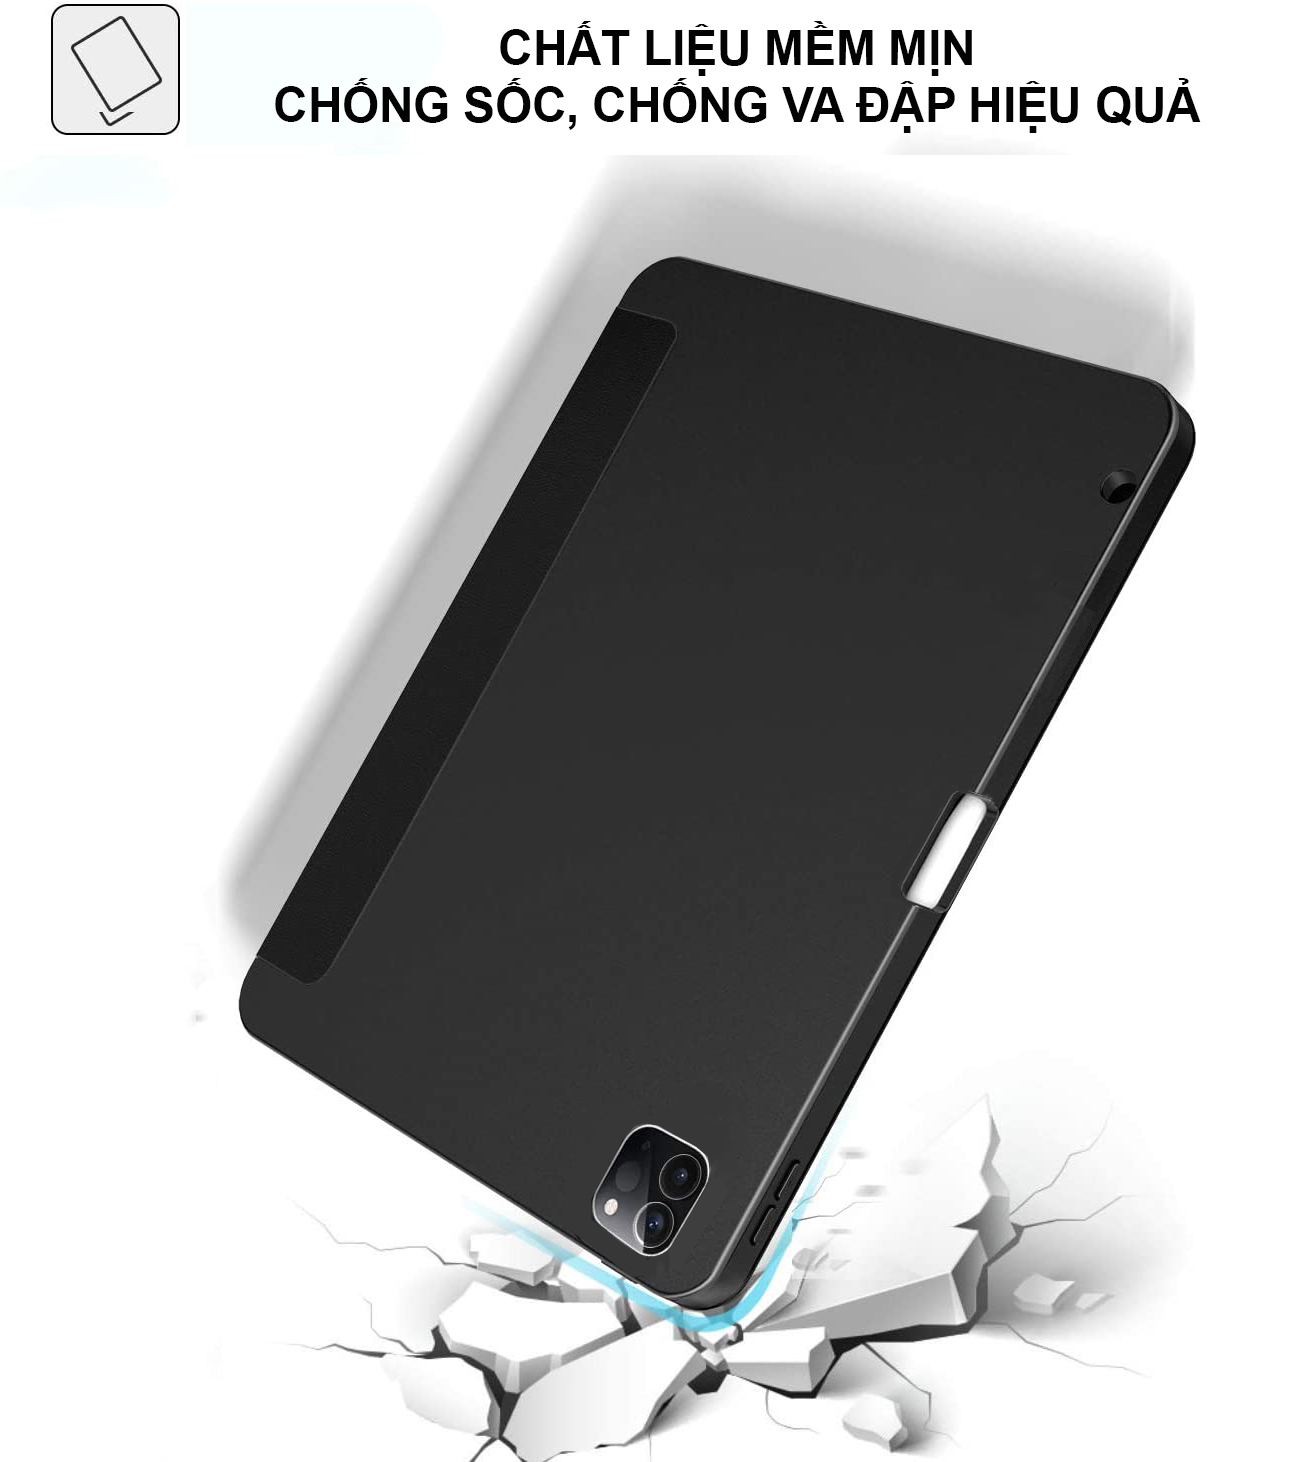 Bao Da Case Cover Dành Cho iPad Pro 11 inch (2020) / iPad Air 4 (10.9 inch) / iPad Pro 12.9 inch (2020) Có Khe Cắm Apple Pencil - Hàng Chính Hãng Meliya accessories